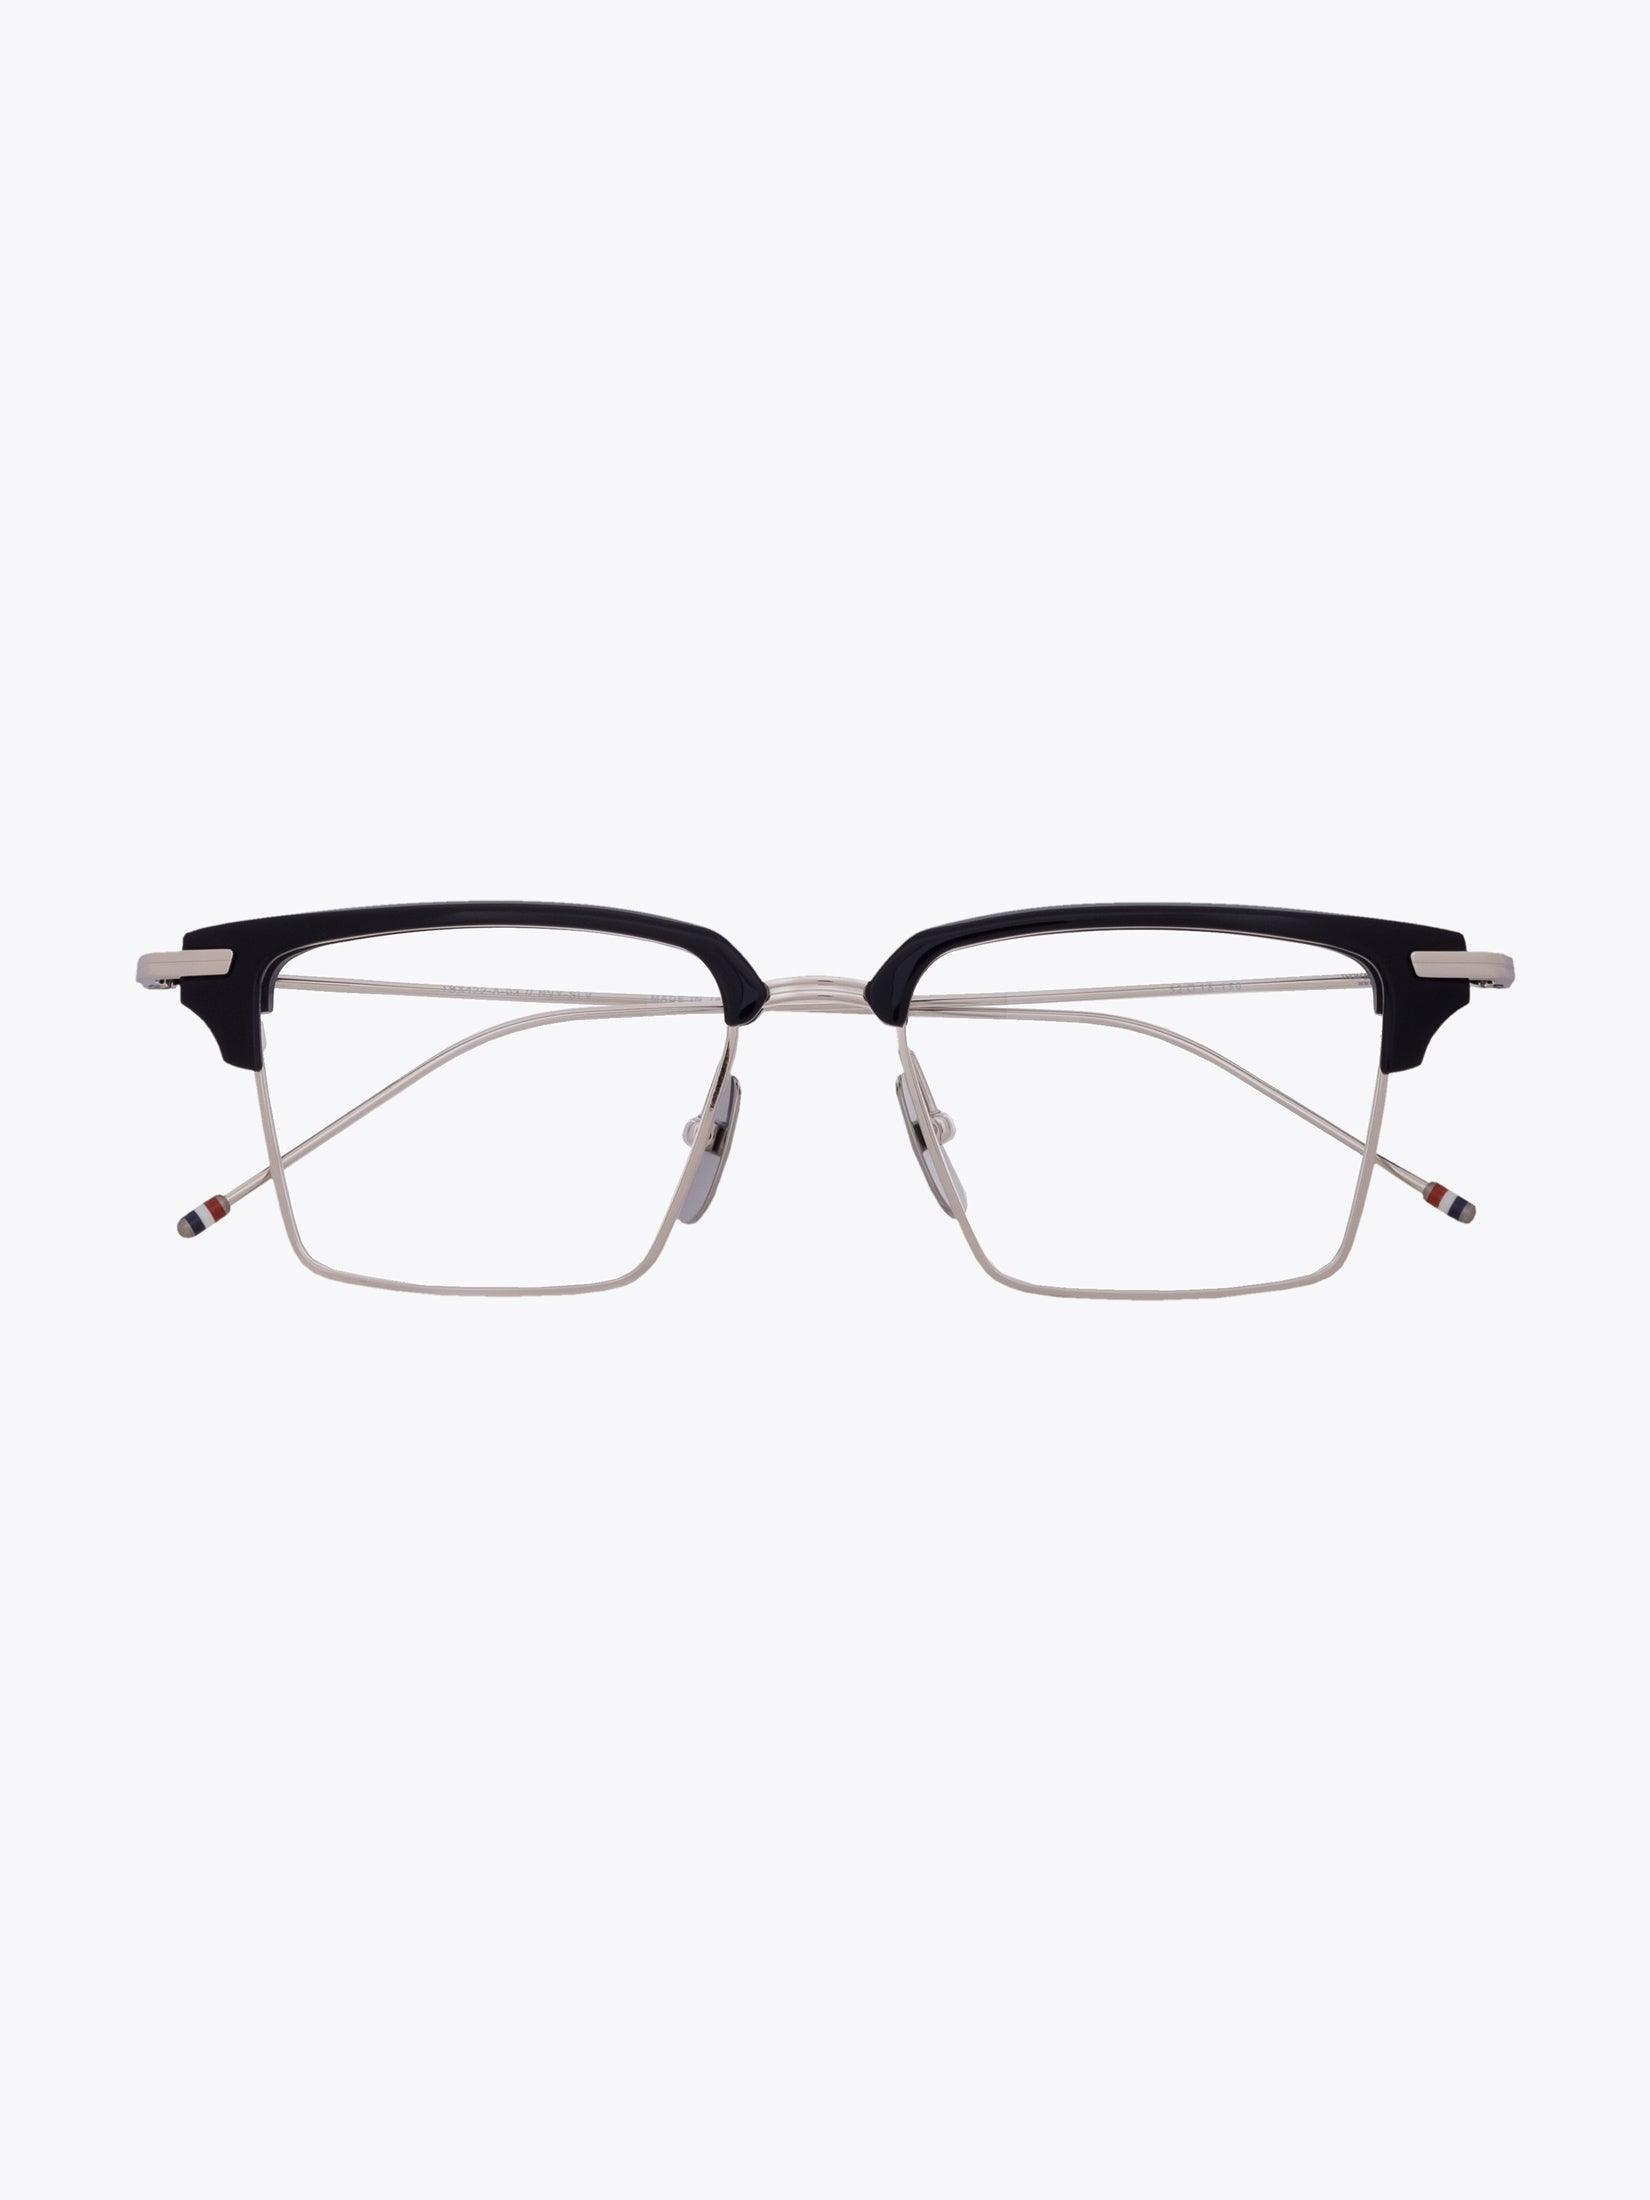 Thom Browne TB-422 Silver/Navy Eyeglasses